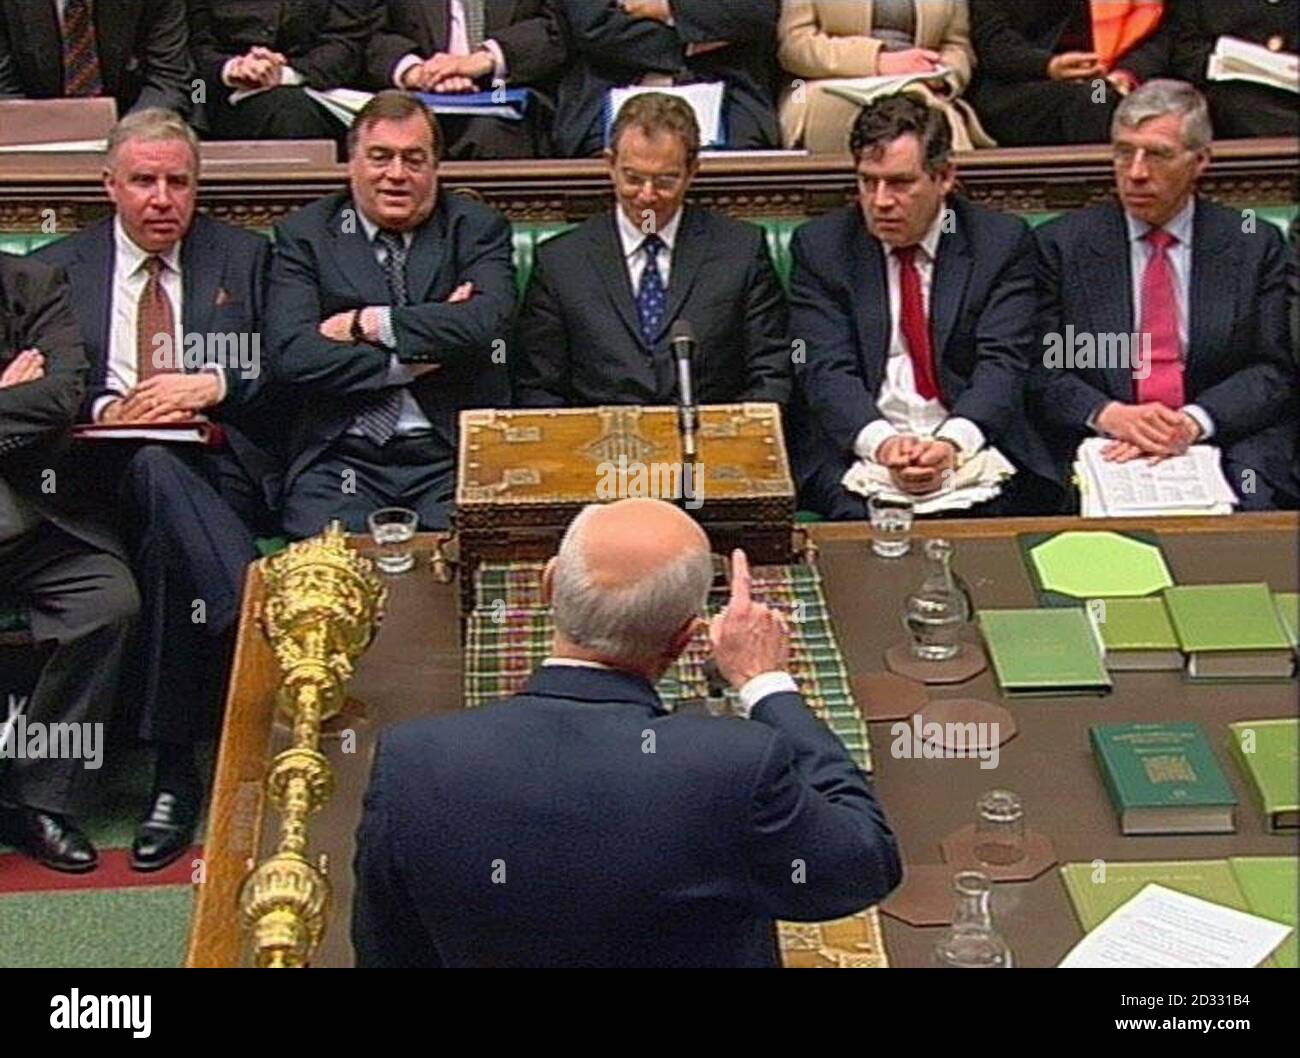 Le chef de l'opposition, Iain Duncan Smith, fait un point au premier ministre britannique Tony Blair à la Chambre des communes à Londres, au cours de sa session hebdomadaire de questions des députés. Banque D'Images